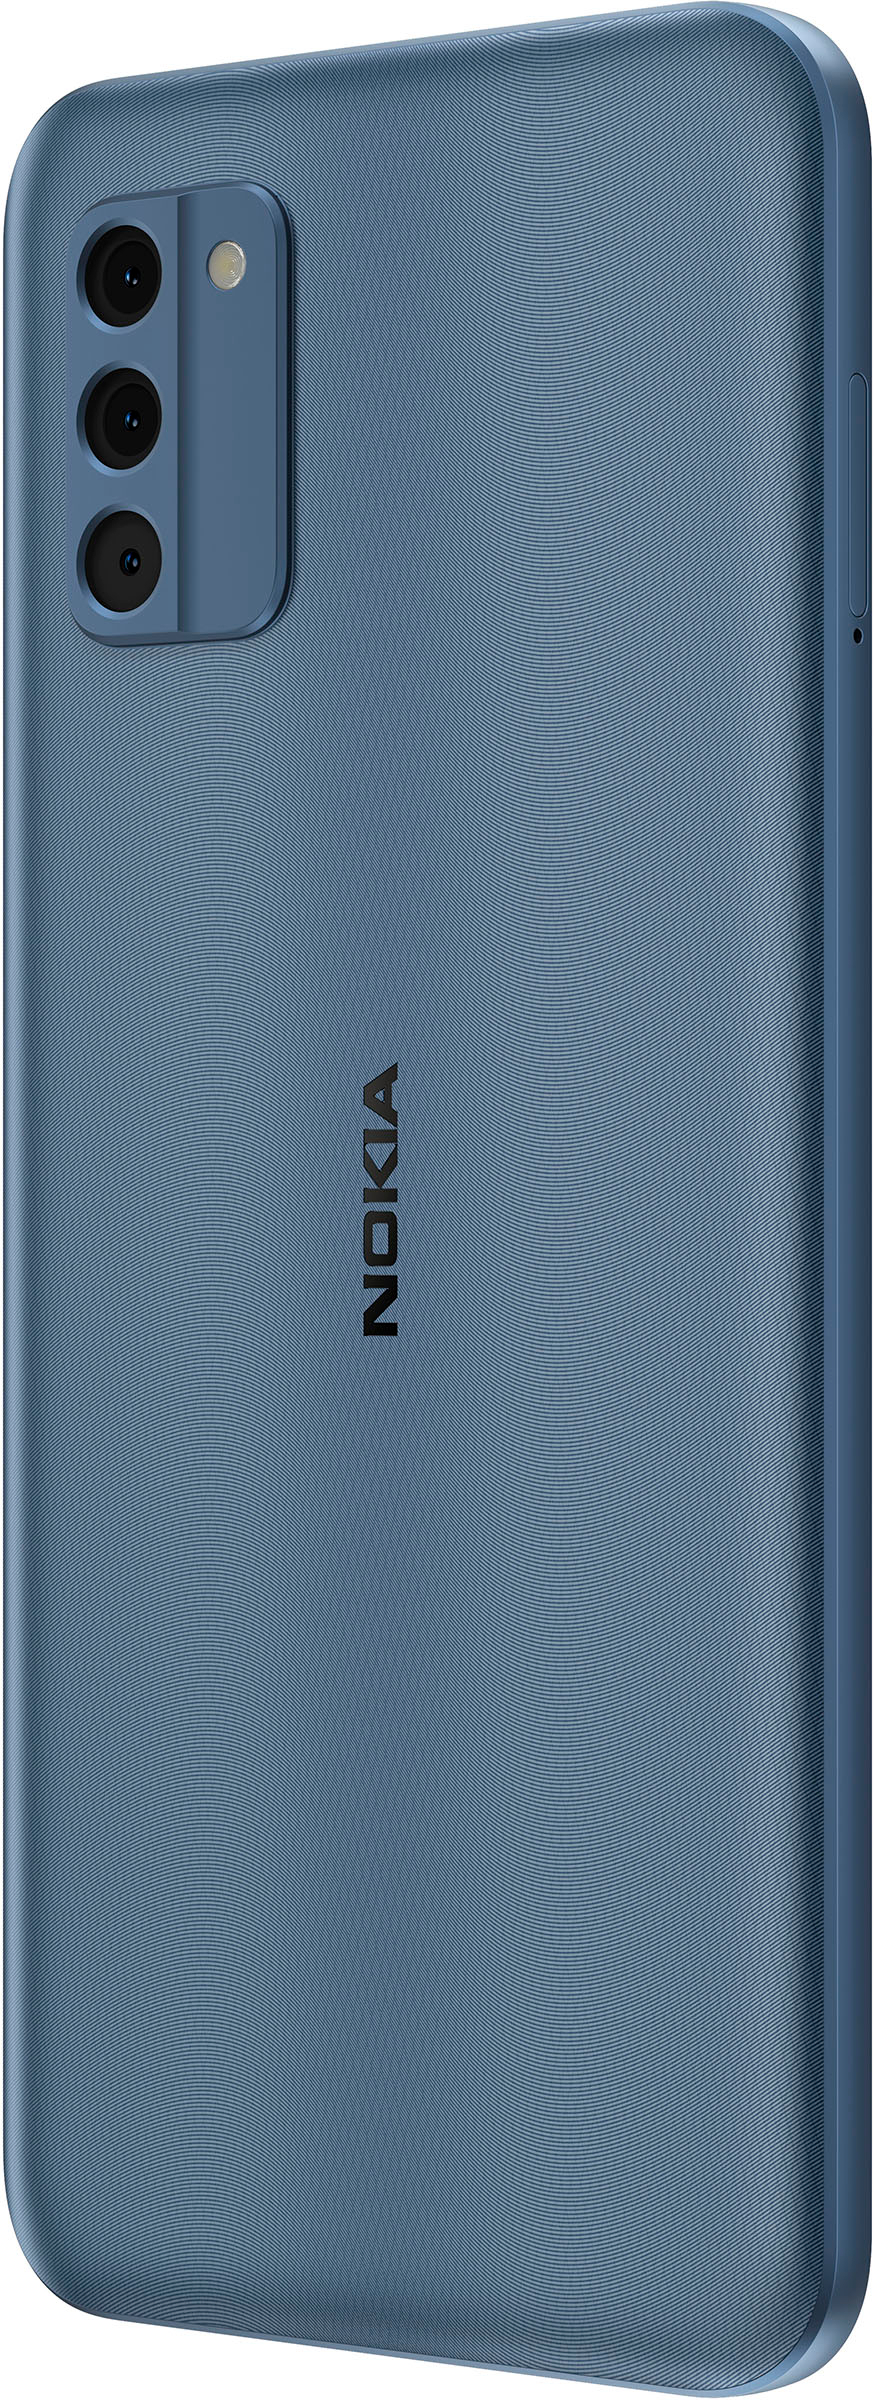 Nokia C300  ECONOMICO y a la VENTA 